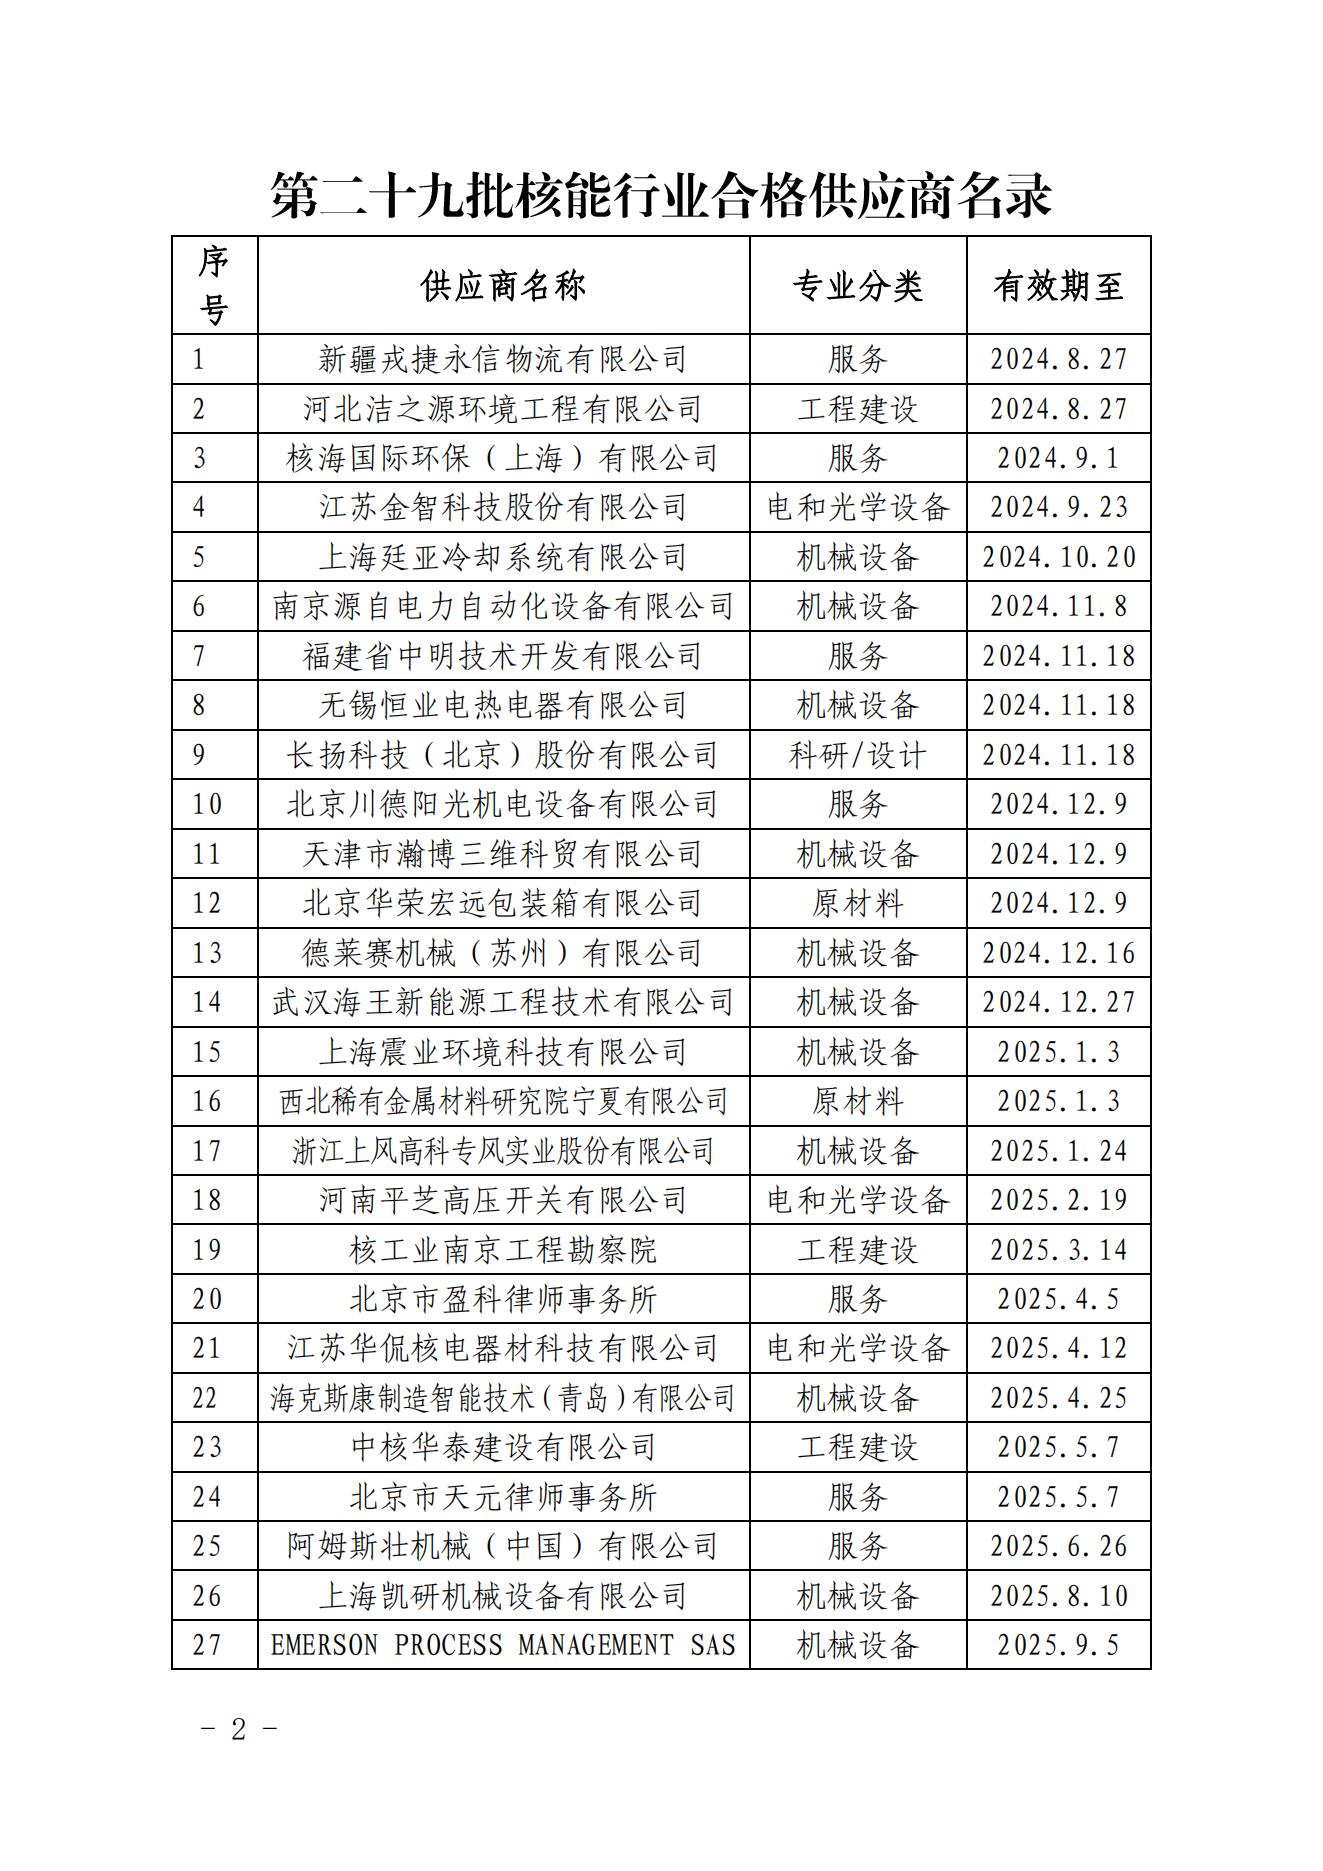 中国核能行业协会关于发布第二十九批核能行业合格供应商名录的公告_01.jpg